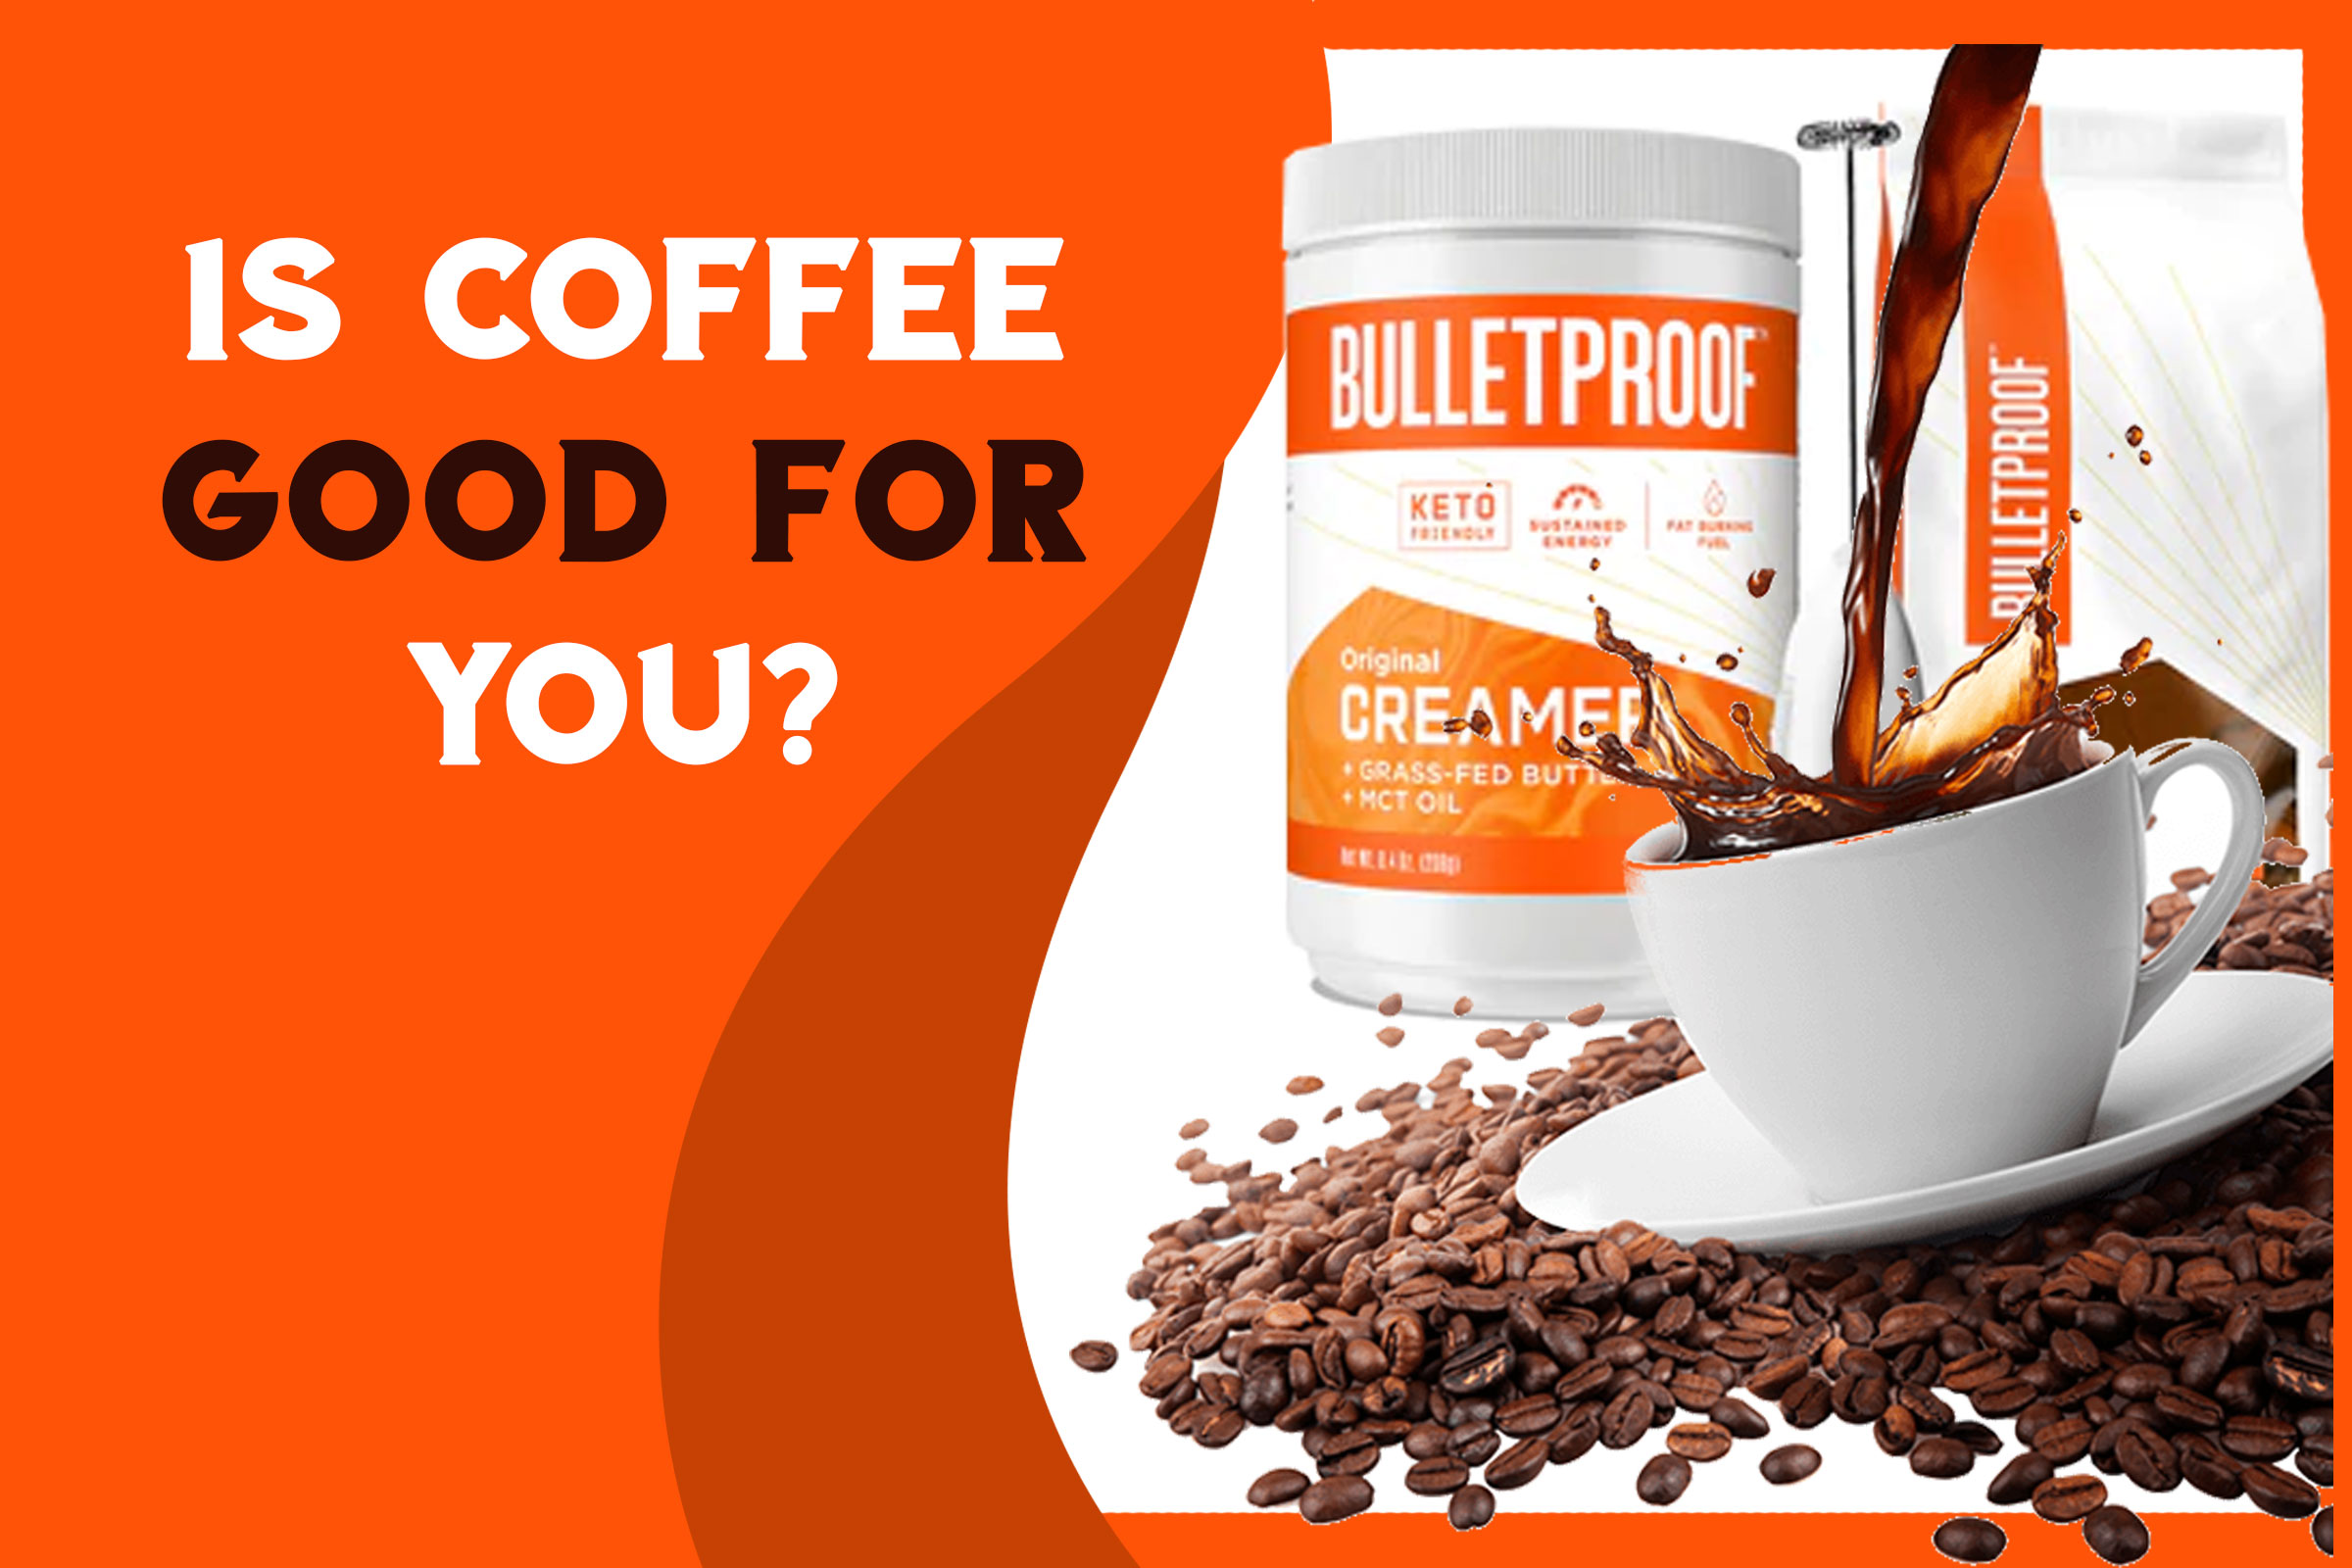 Is bulletproof coffee good for health?